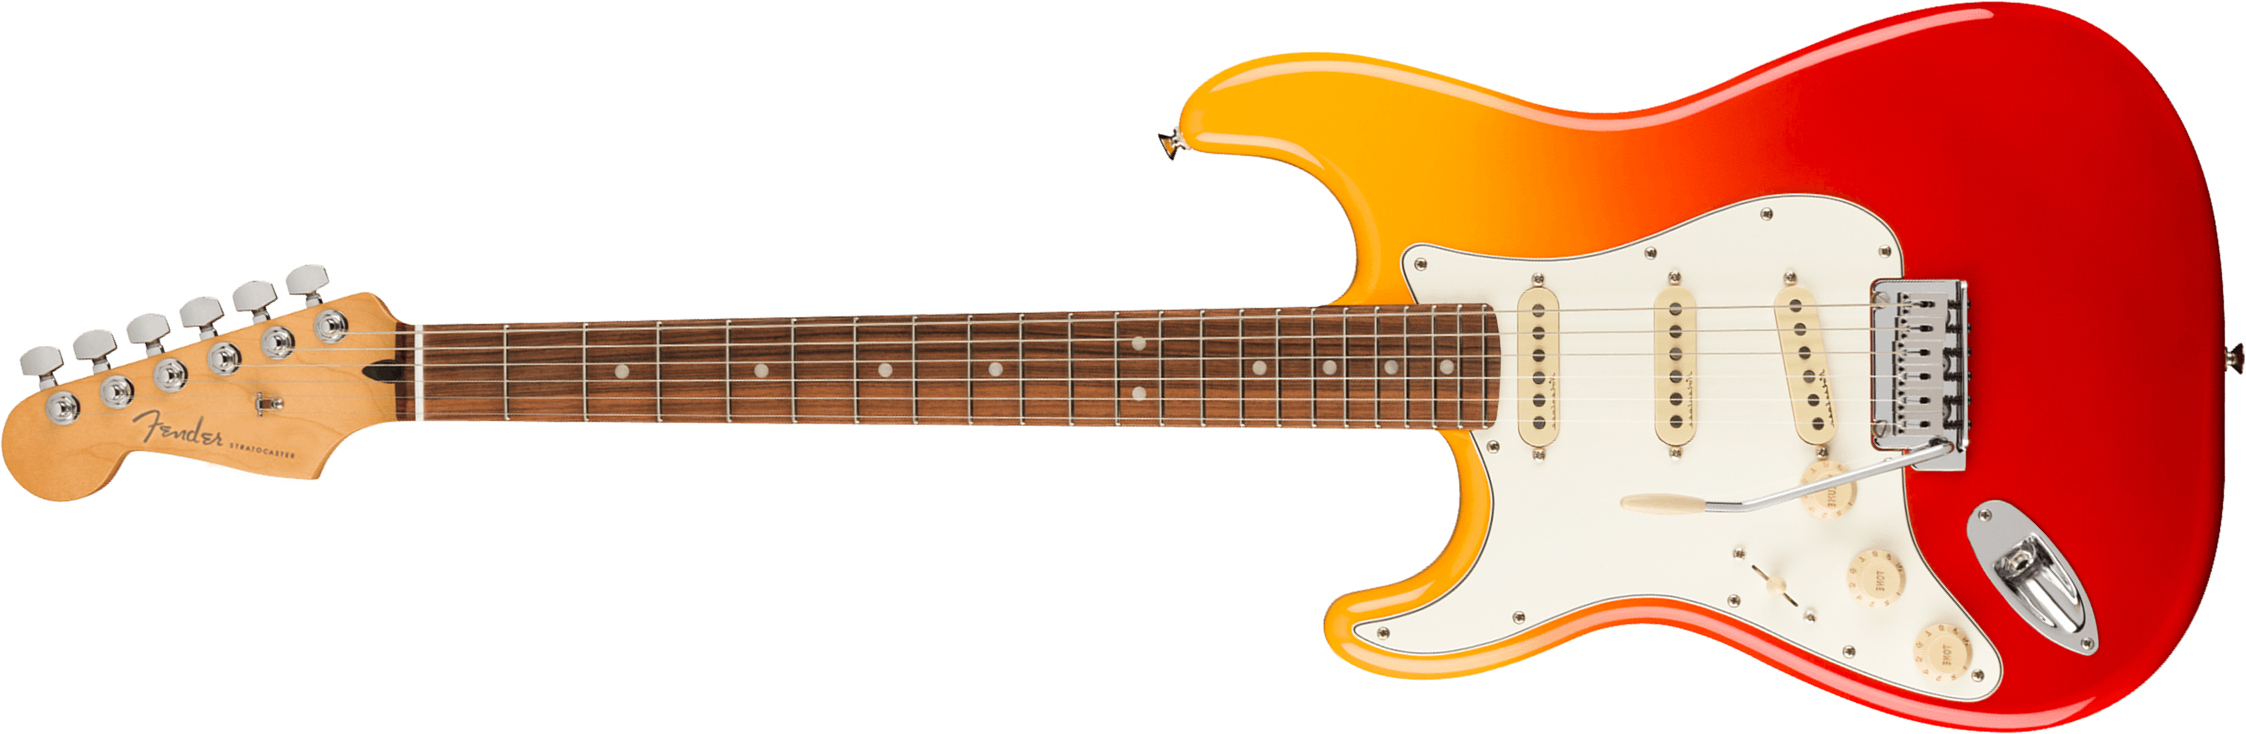 Fender Strat Player Plus Lh Gaucher Mex 3s Trem Pf - Tequila Sunrise - E-Gitarre für Linkshänder - Main picture